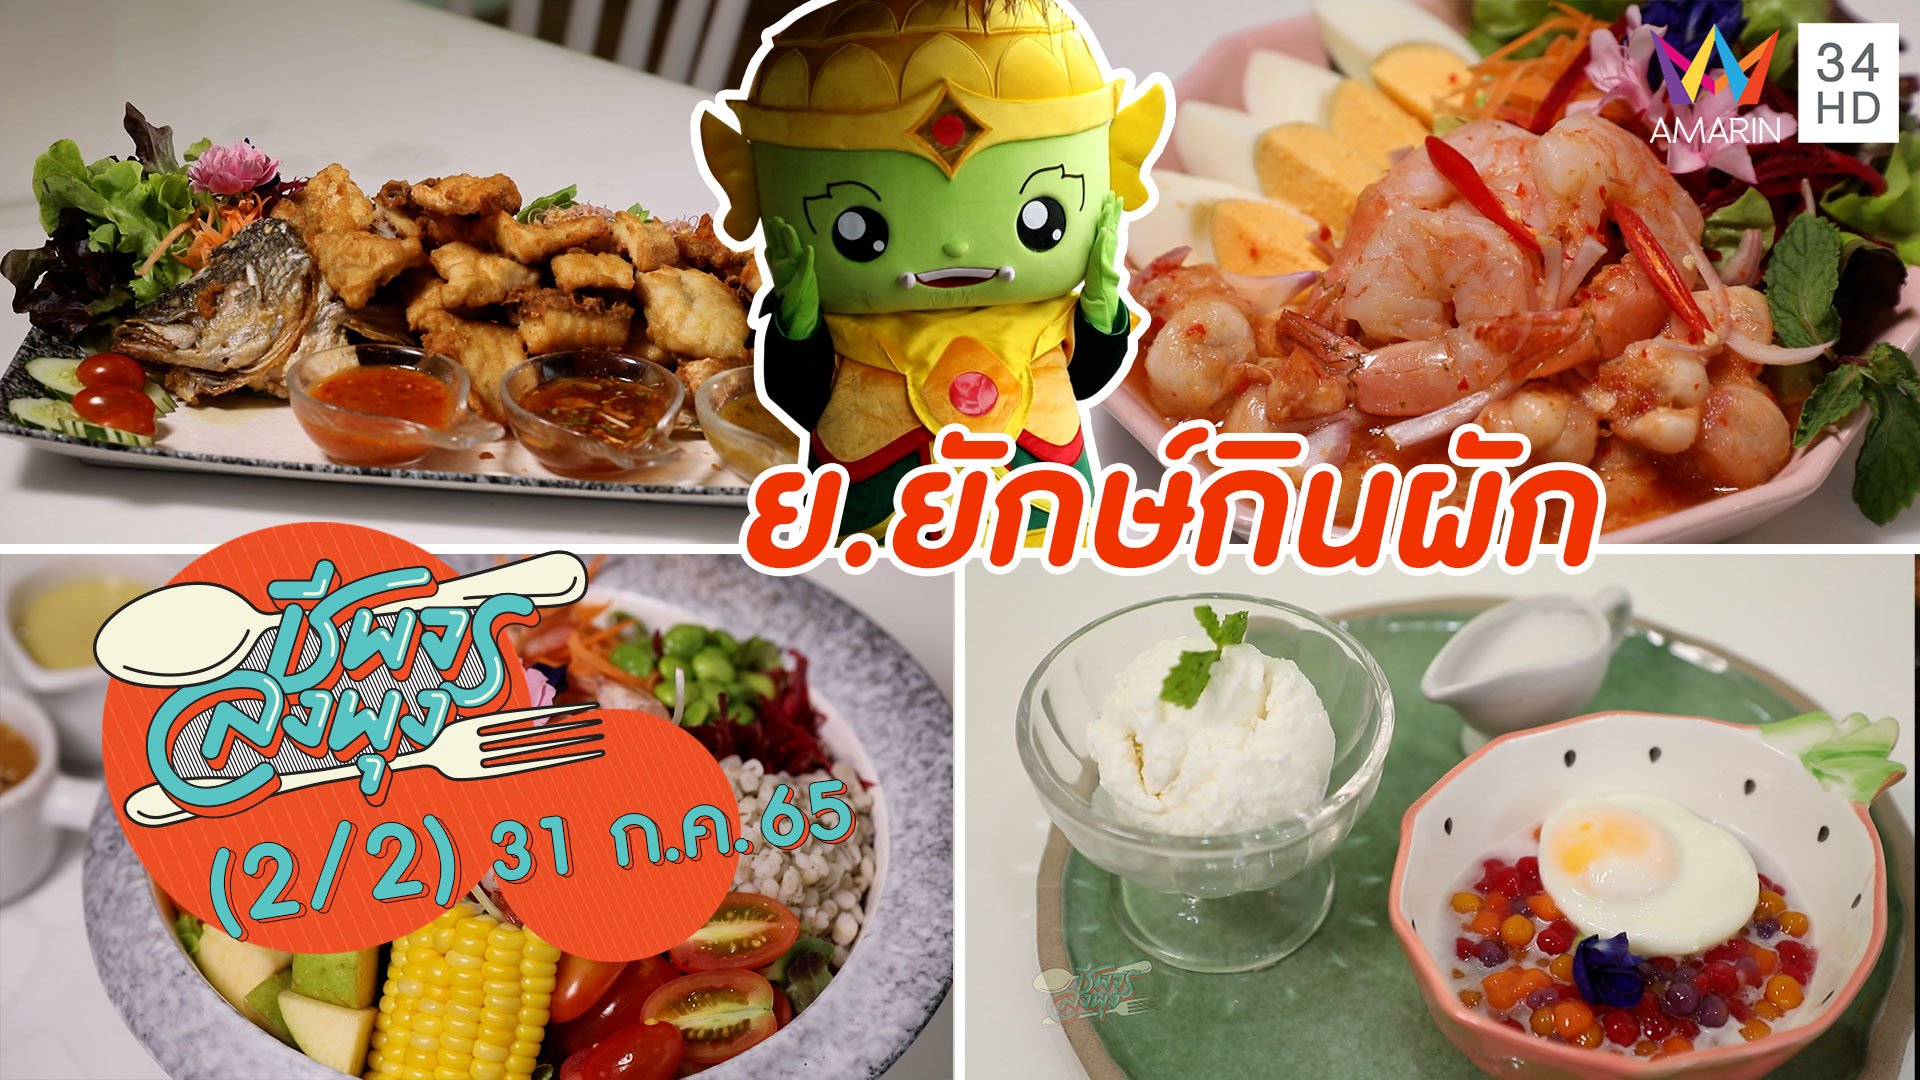 อาหารสุขภาพสไตล์ไทยๆ @ ร้าน ย.ยักษ์กินผัก | ชีพจรลงพุง | 31 ก.ค. 65 (2/2) | AMARIN TVHD34